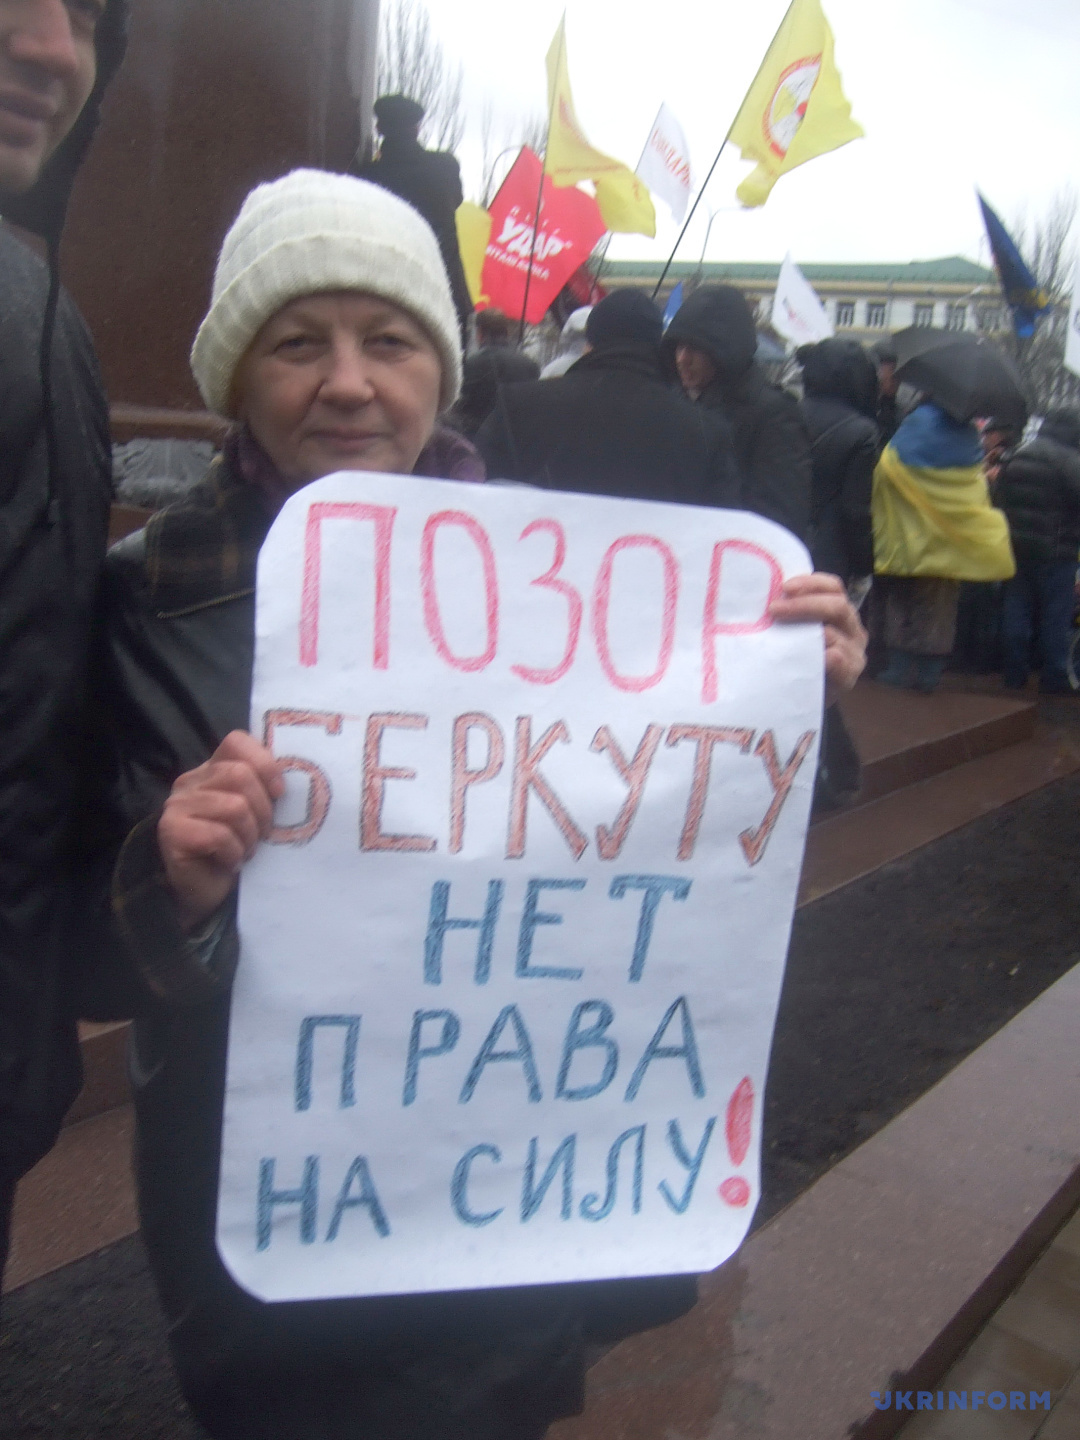 Participants à une action en soutien aux manifestants à Kyiv près du monument de Taras Shevchenko, Donetsk, le 1er décembre 2013. / Photo : Yuli Zozulia